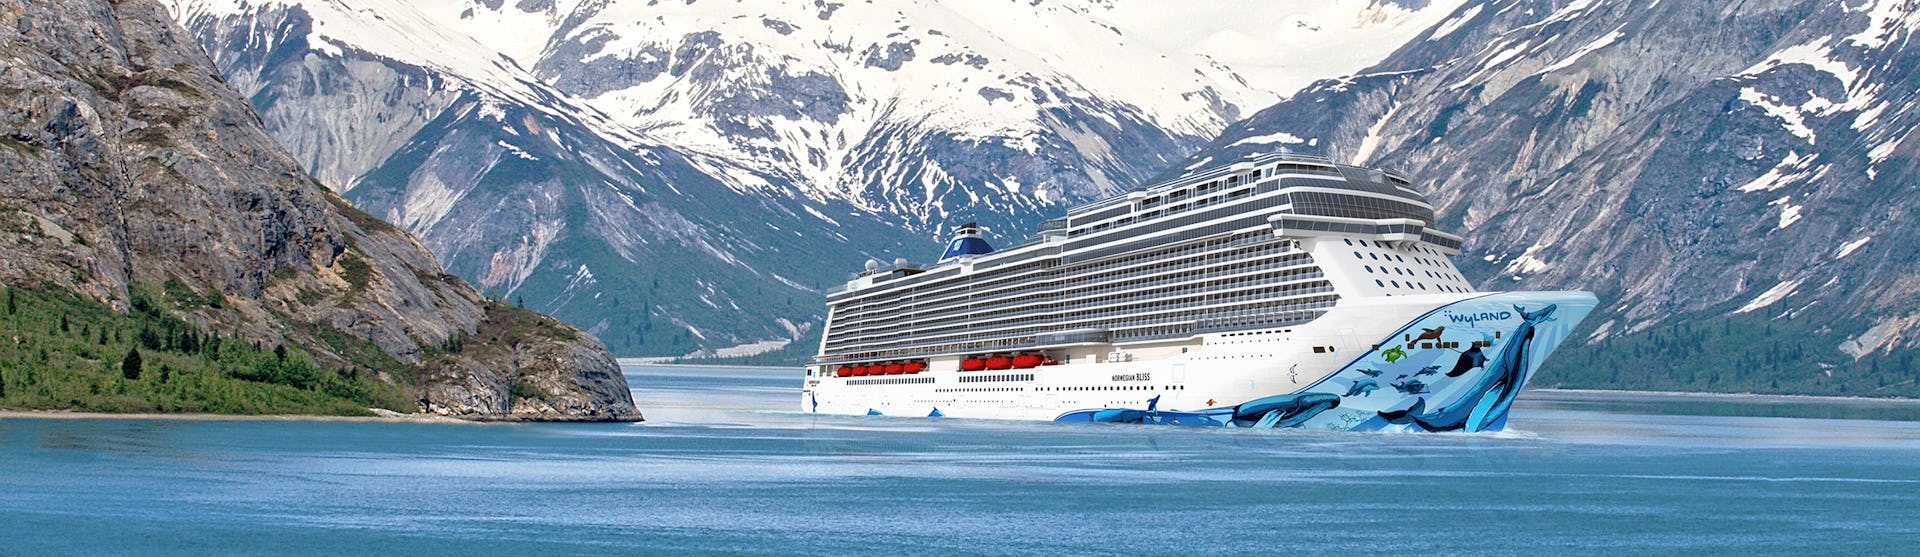 Norwegian Bliss - Norwegian Cruise Line